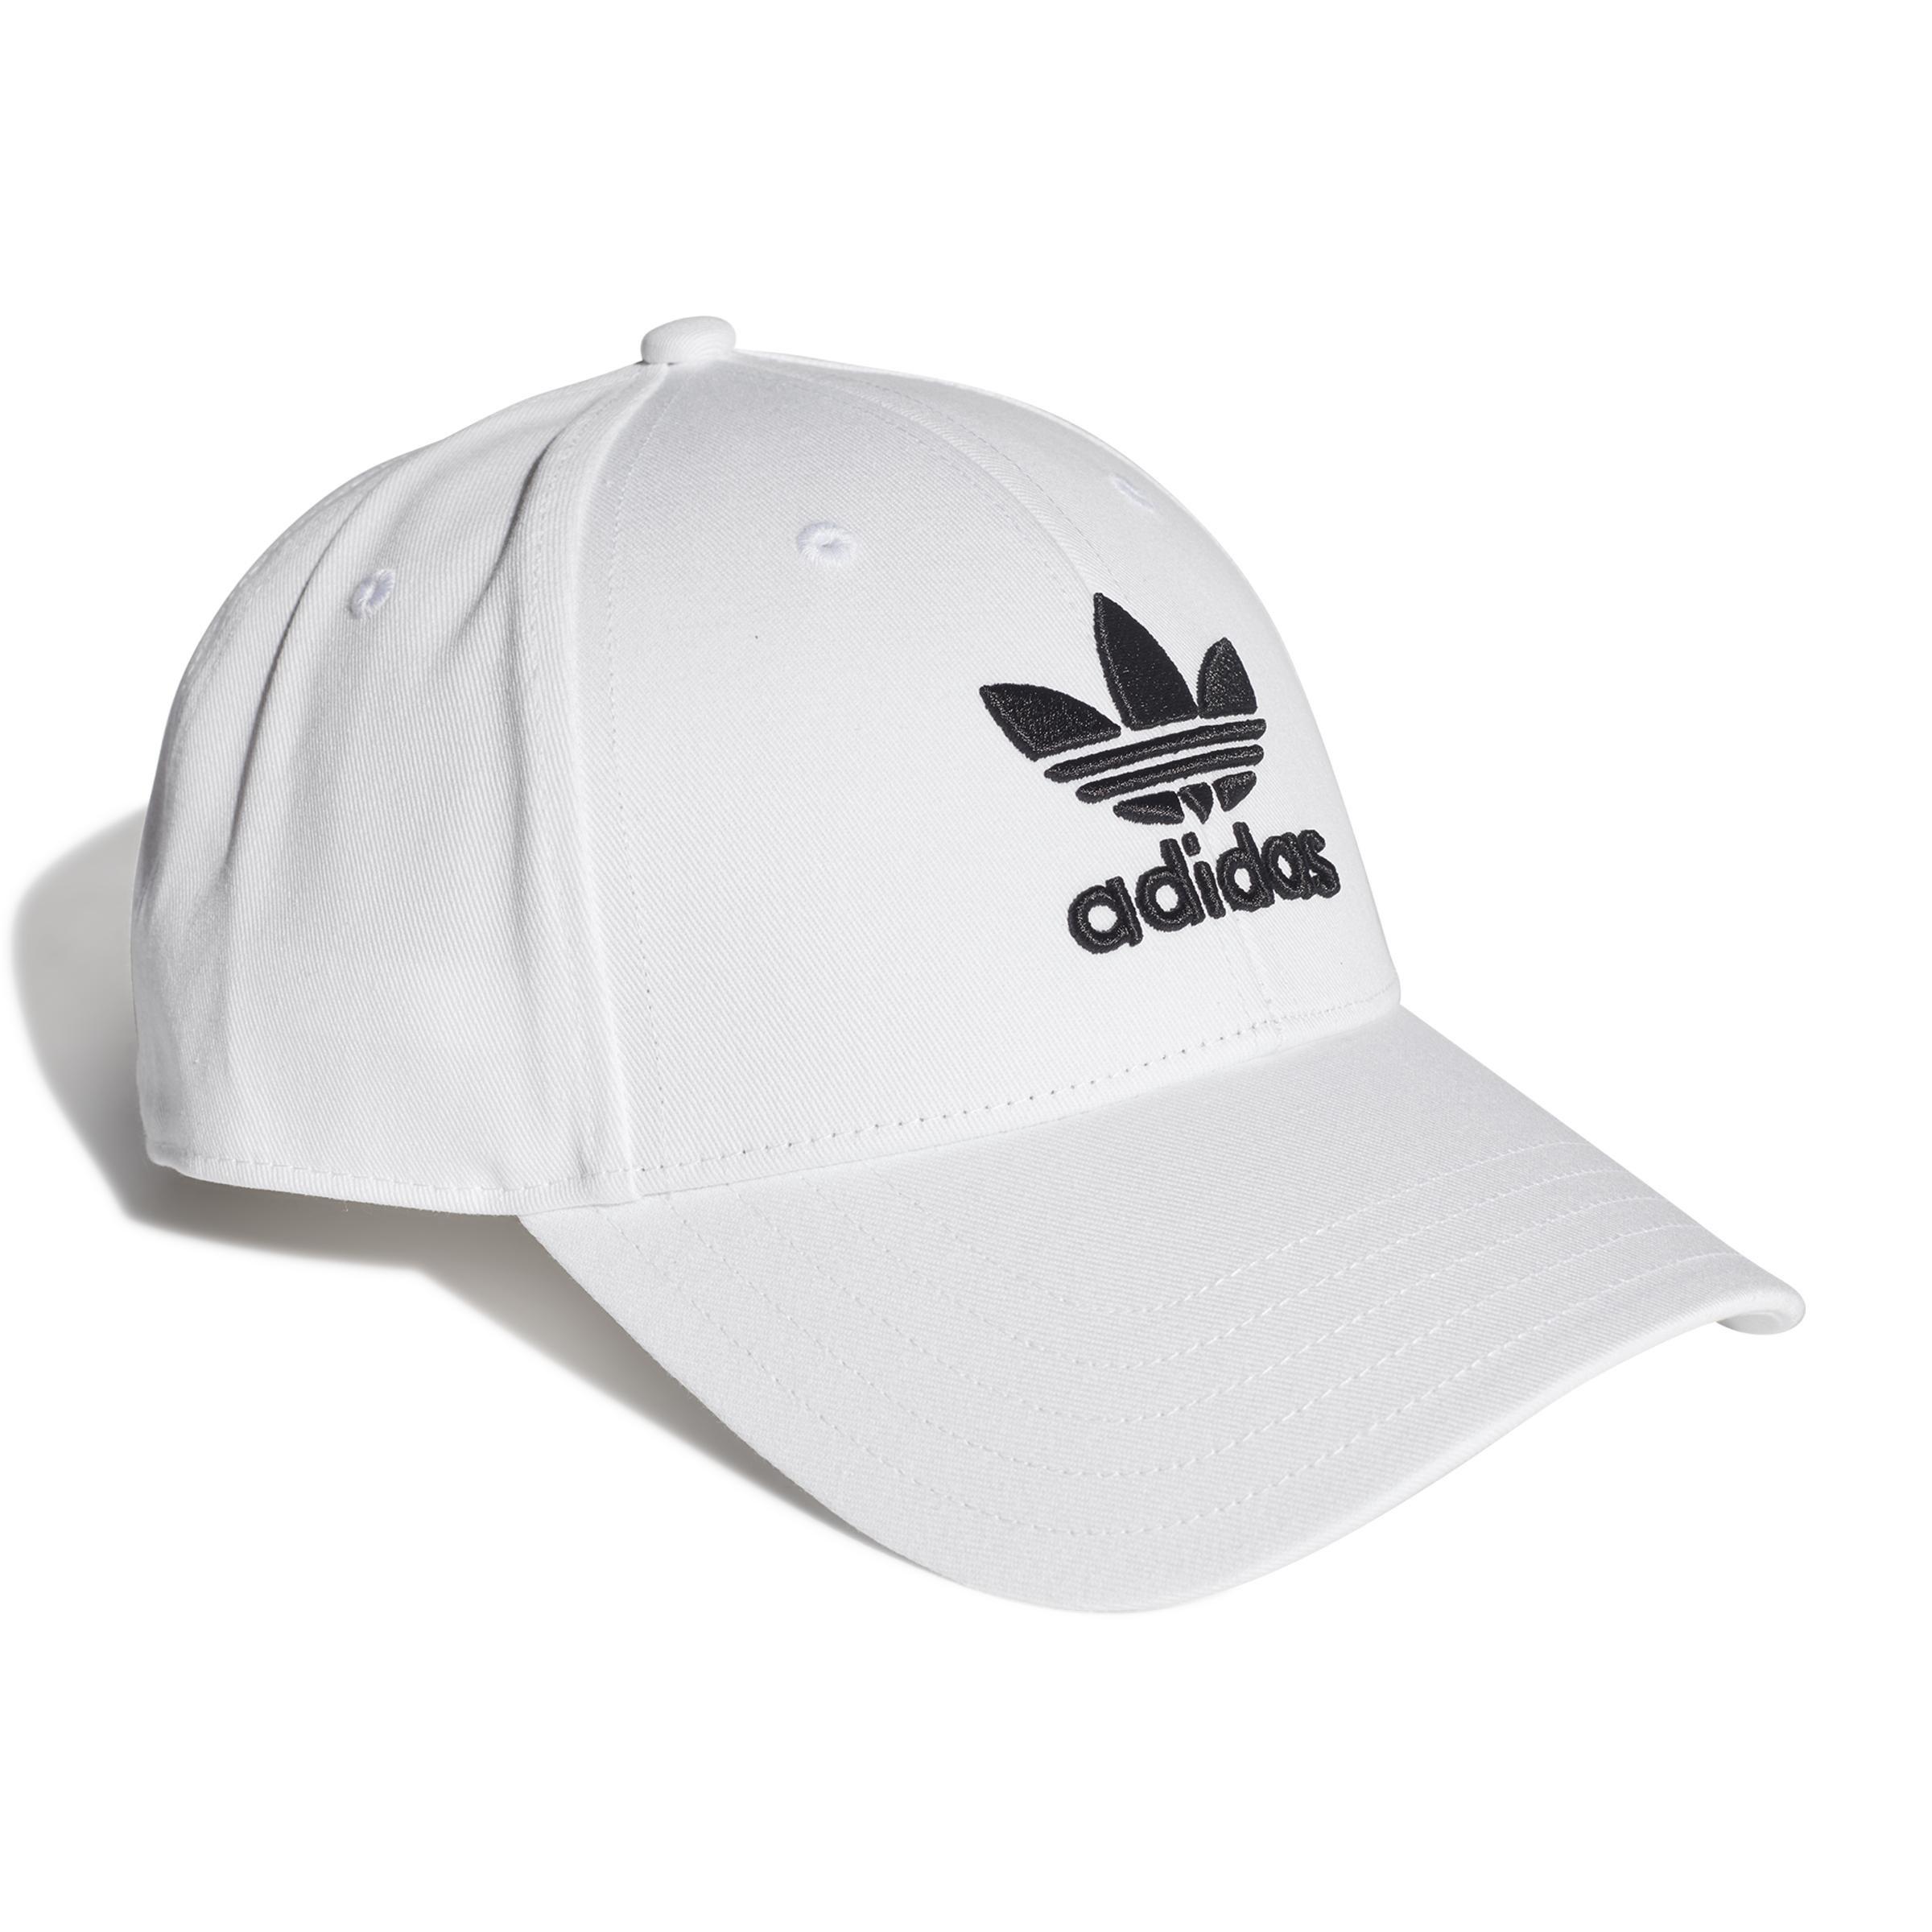 adidas - Unisex Trefoil Baseball Cap, White